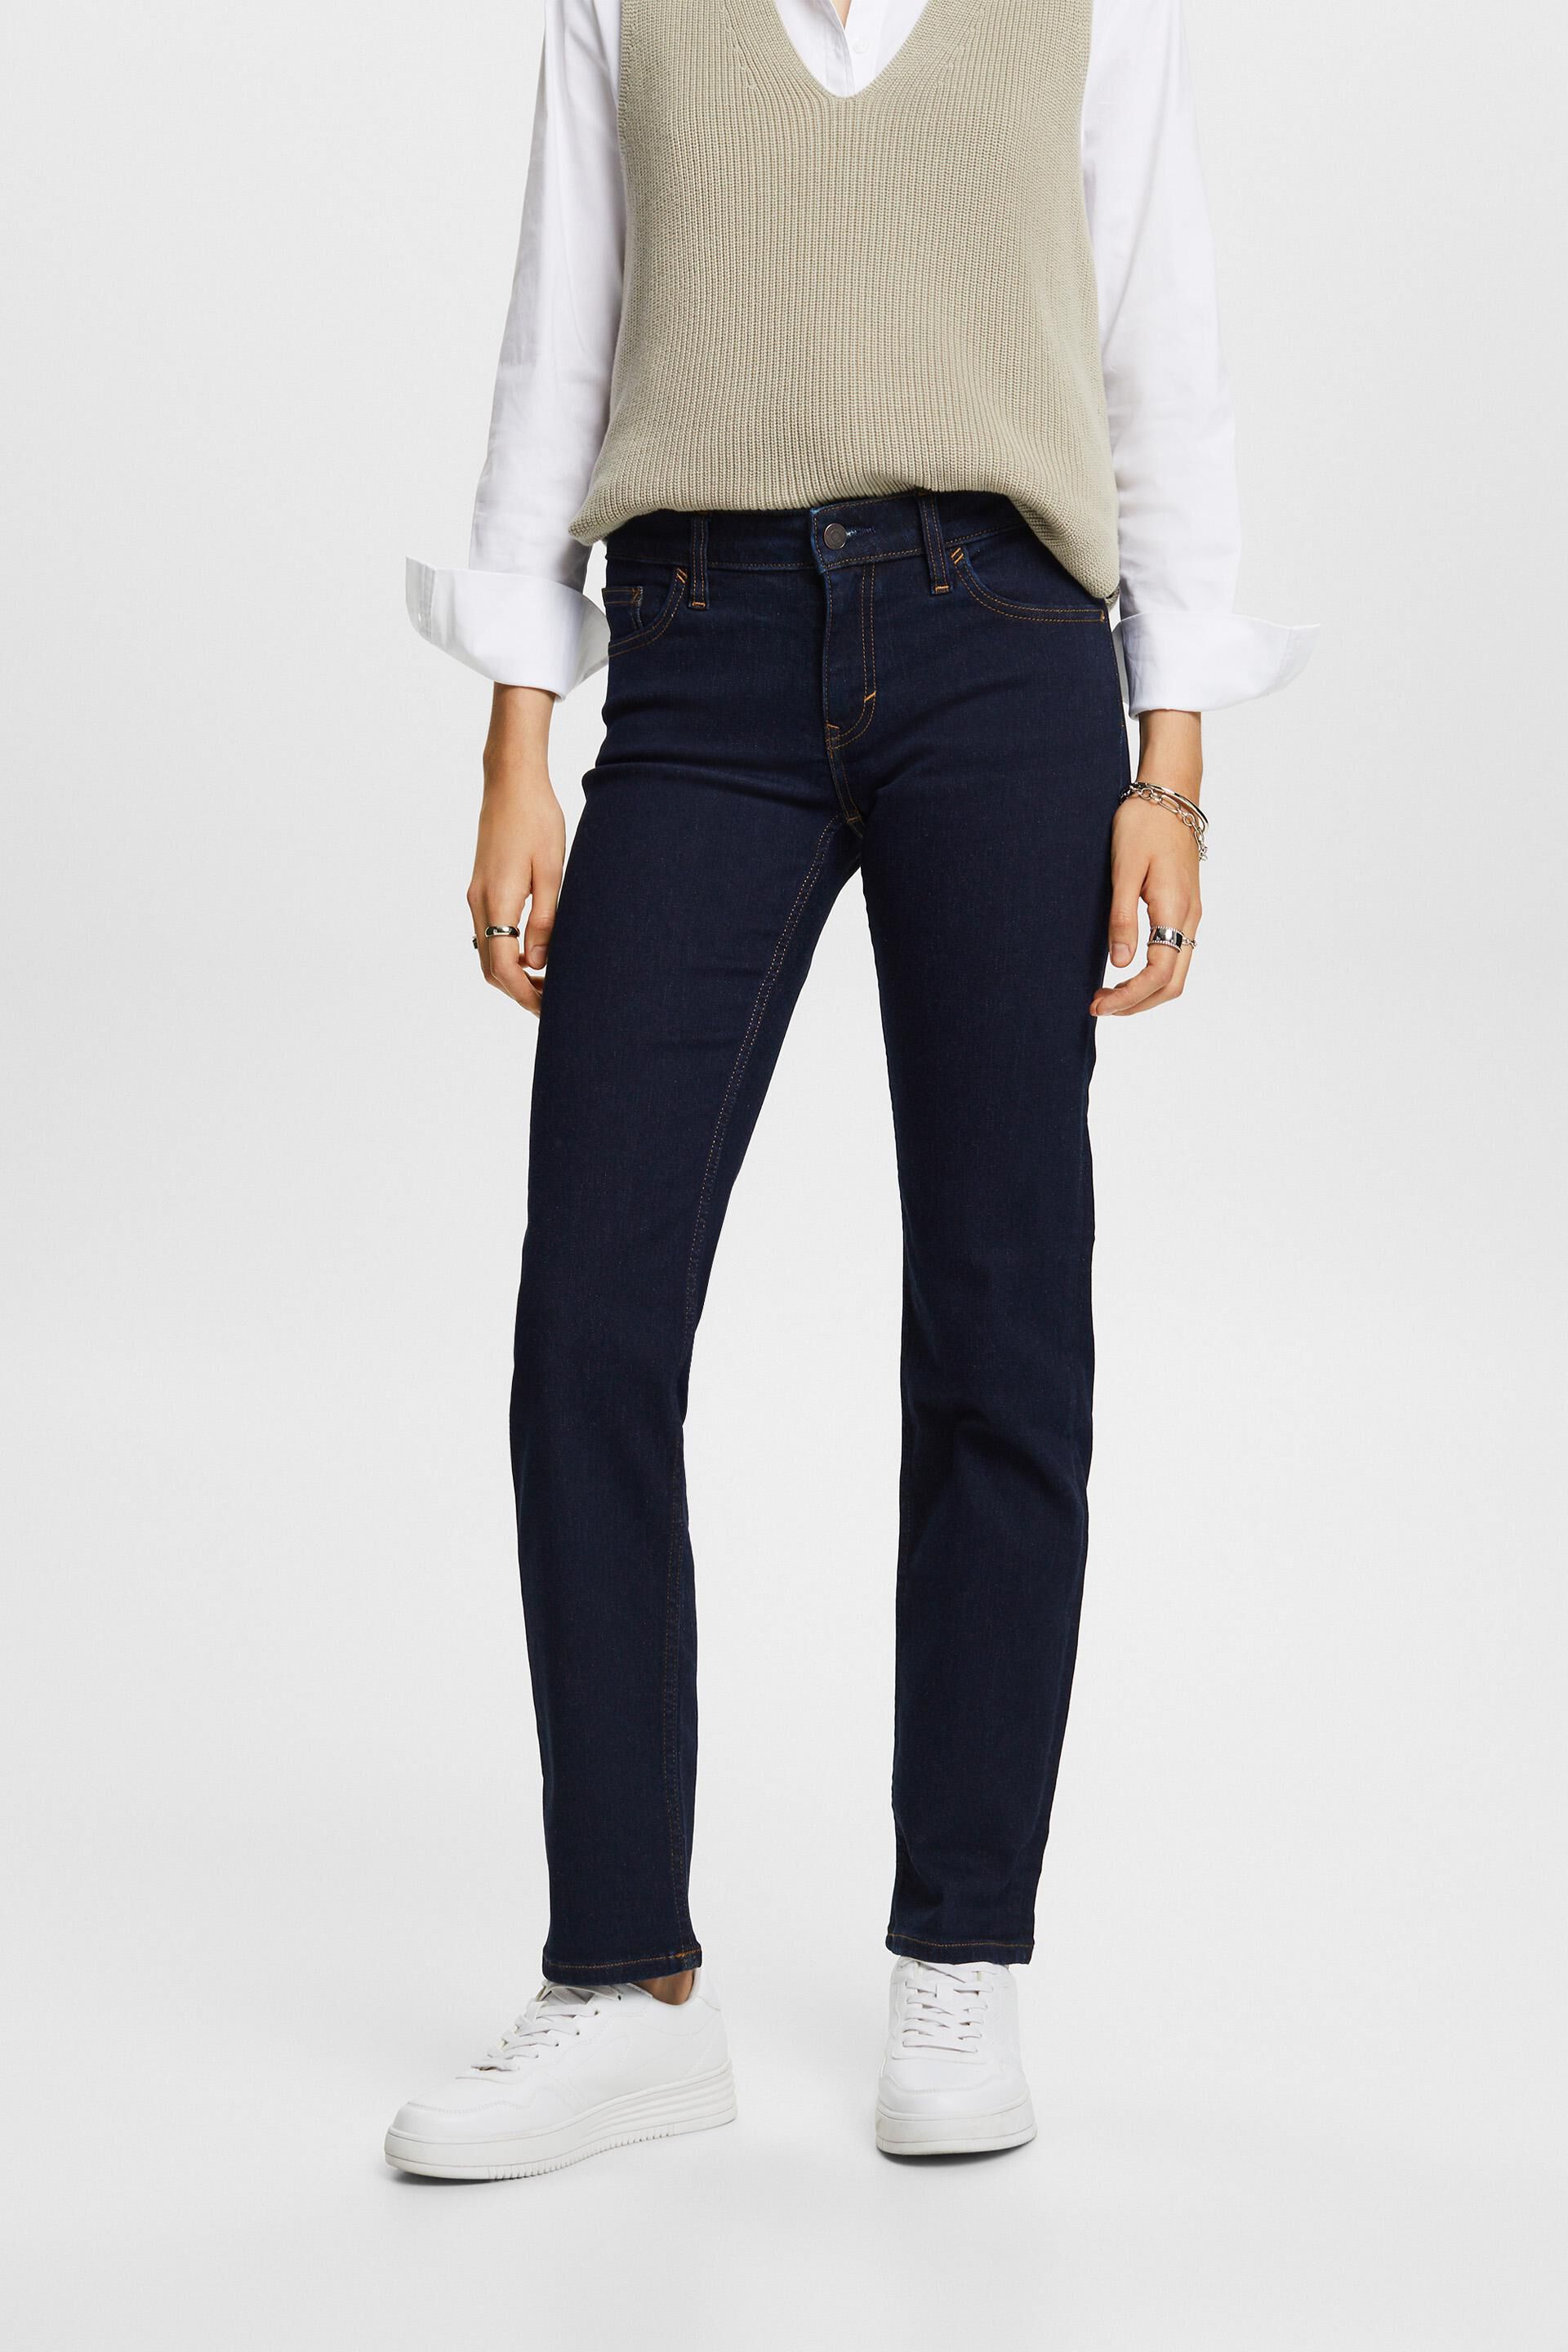 Esprit cotton Straight jeans, leg stretch blend